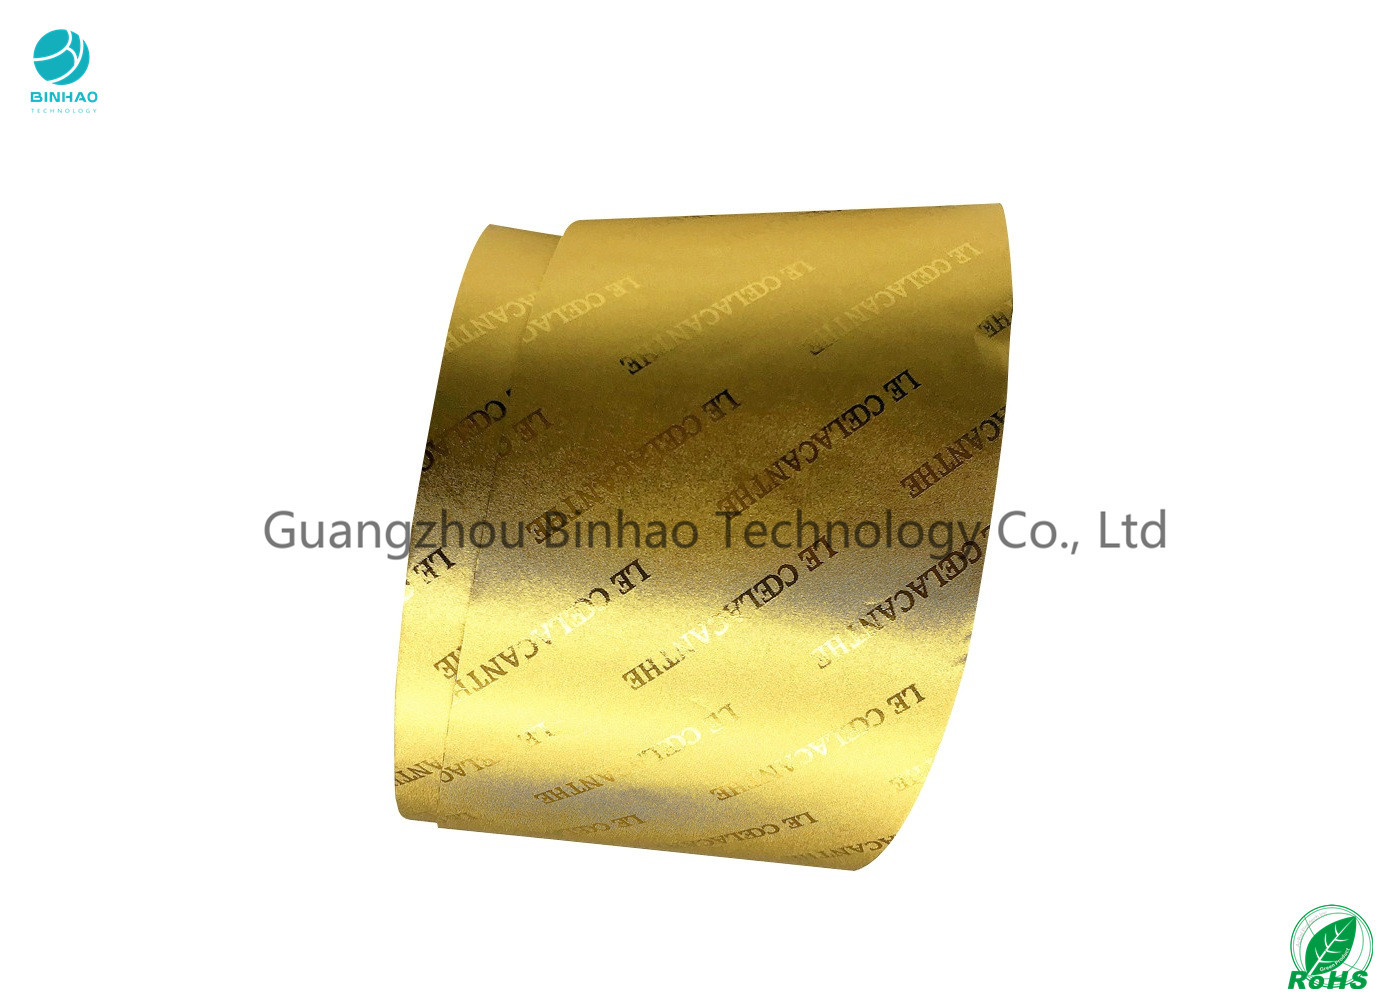 Αποτύπωση σε ανάγλυφο του χρυσού εγγράφου φύλλων αλουμινίου αλουμινίου για τη συσκευασία τσιγάρων σε 55GSM